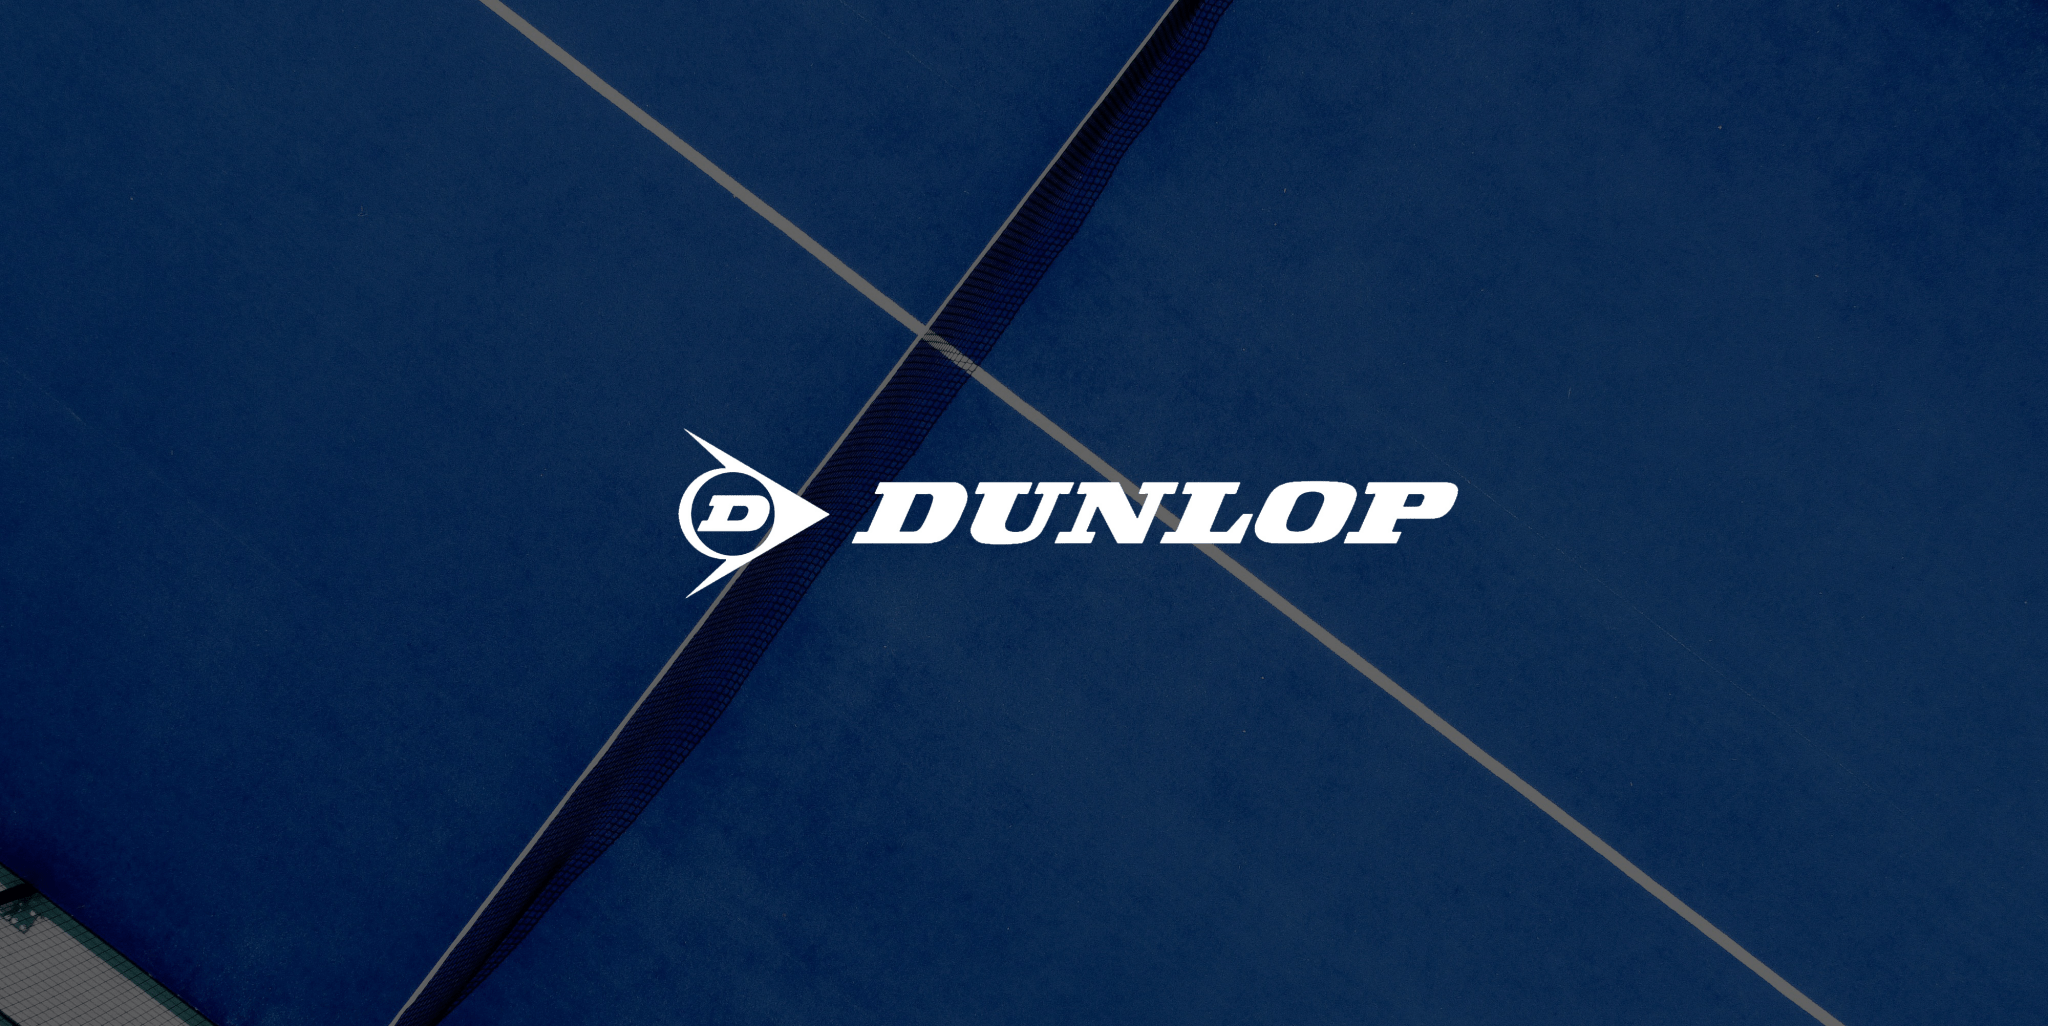 Dunlop Rackets - The Padelverse